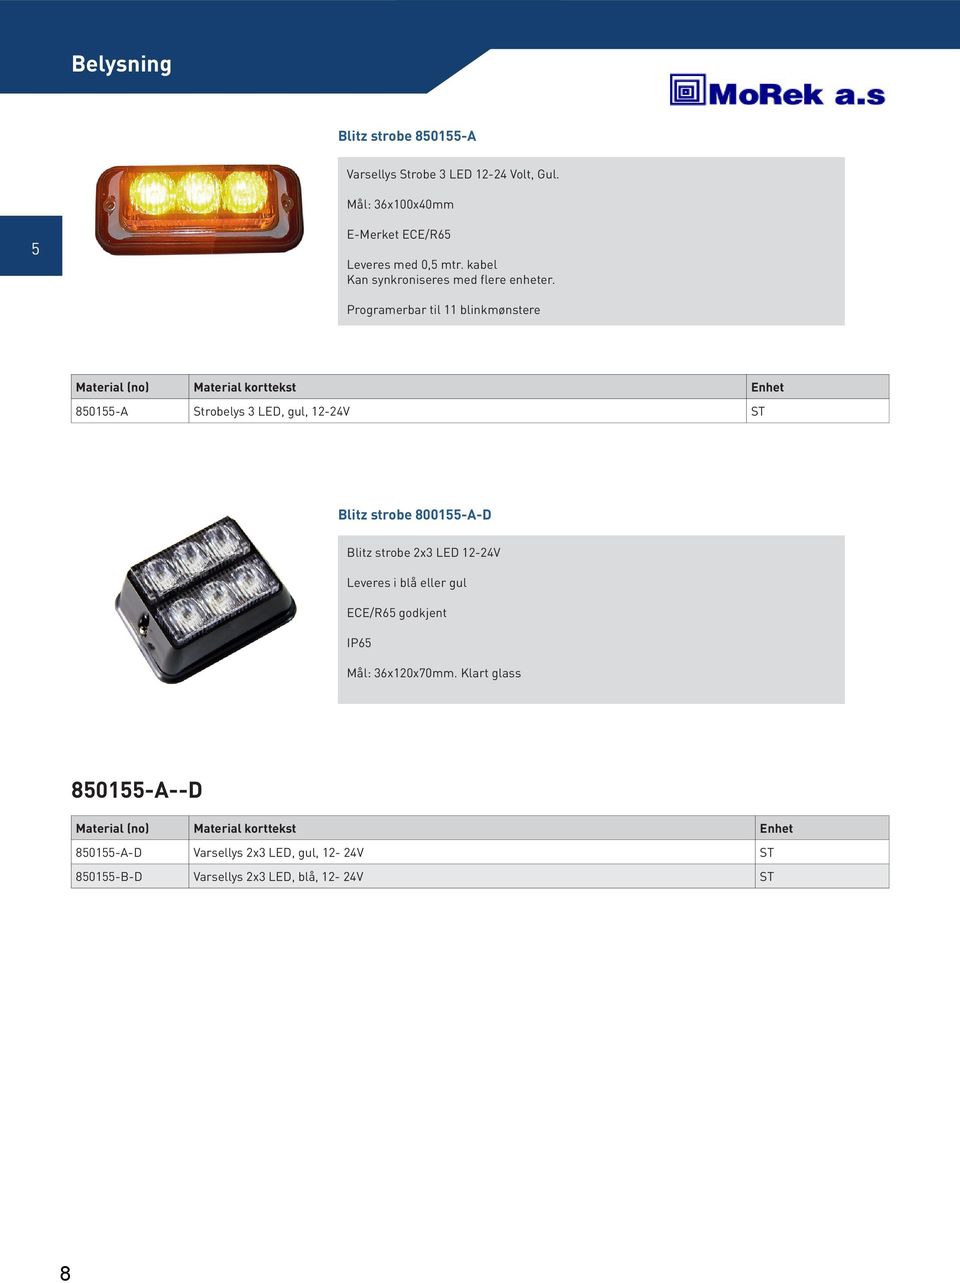 Programerbar til 11 blinkmønstere 801-A Strobelys 3 LED, gul, 12-24V Blitz strobe 8001-A-D Blitz strobe 2x3